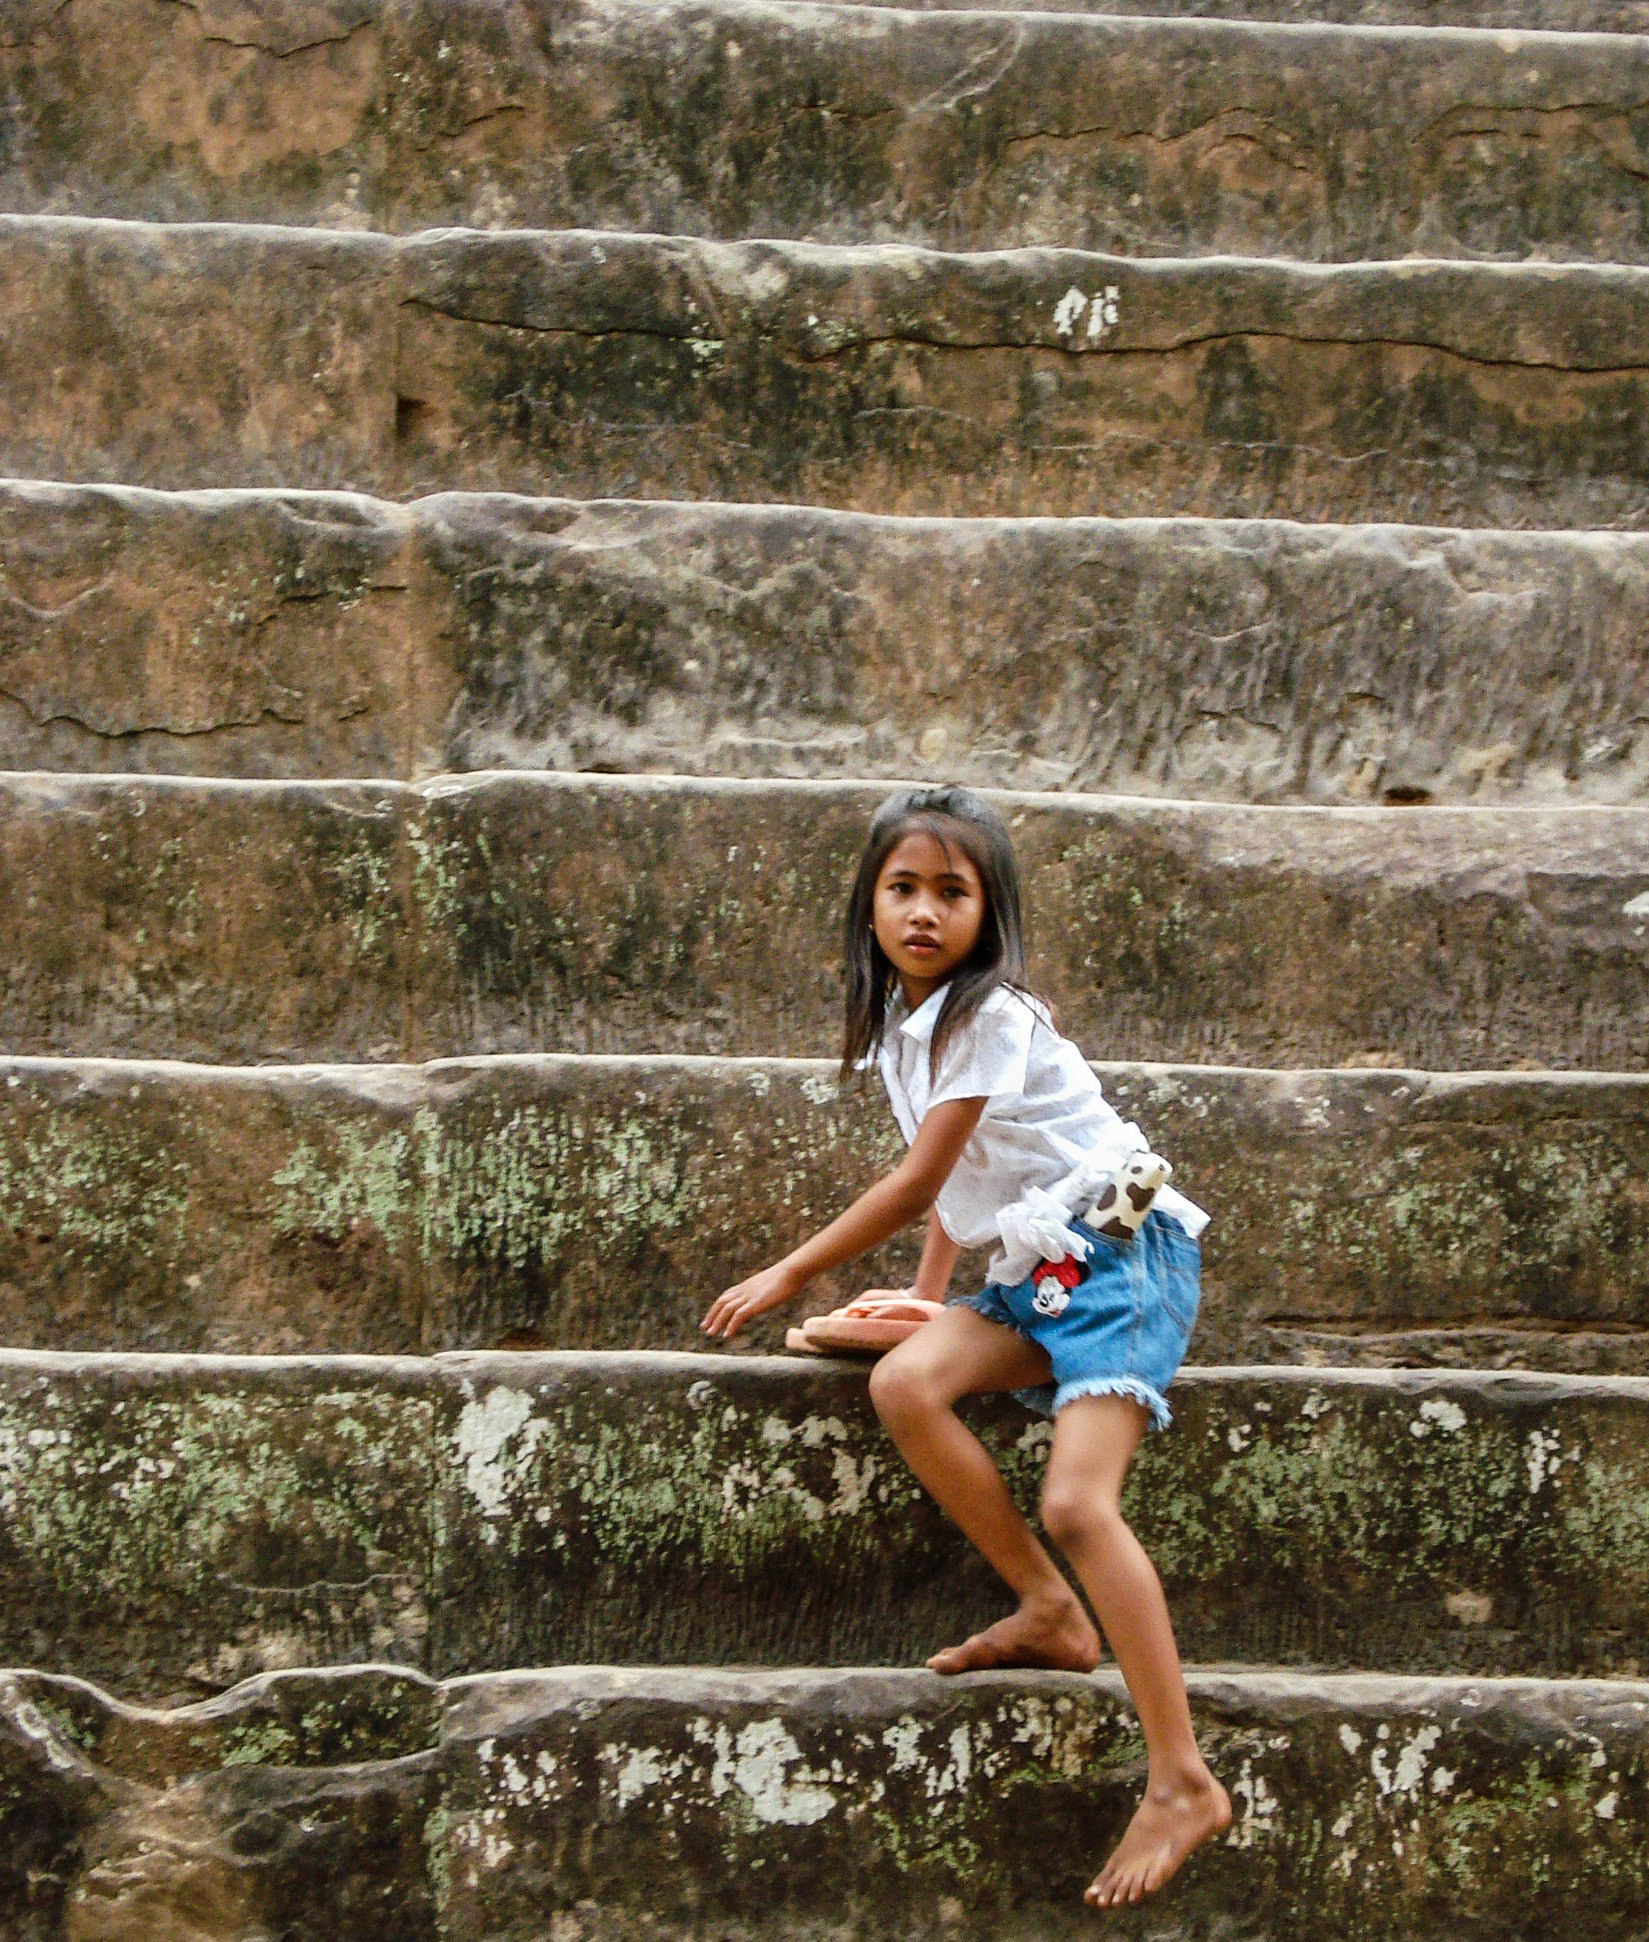 Sony DSC-W70 sample photo. Angkor small climber photography